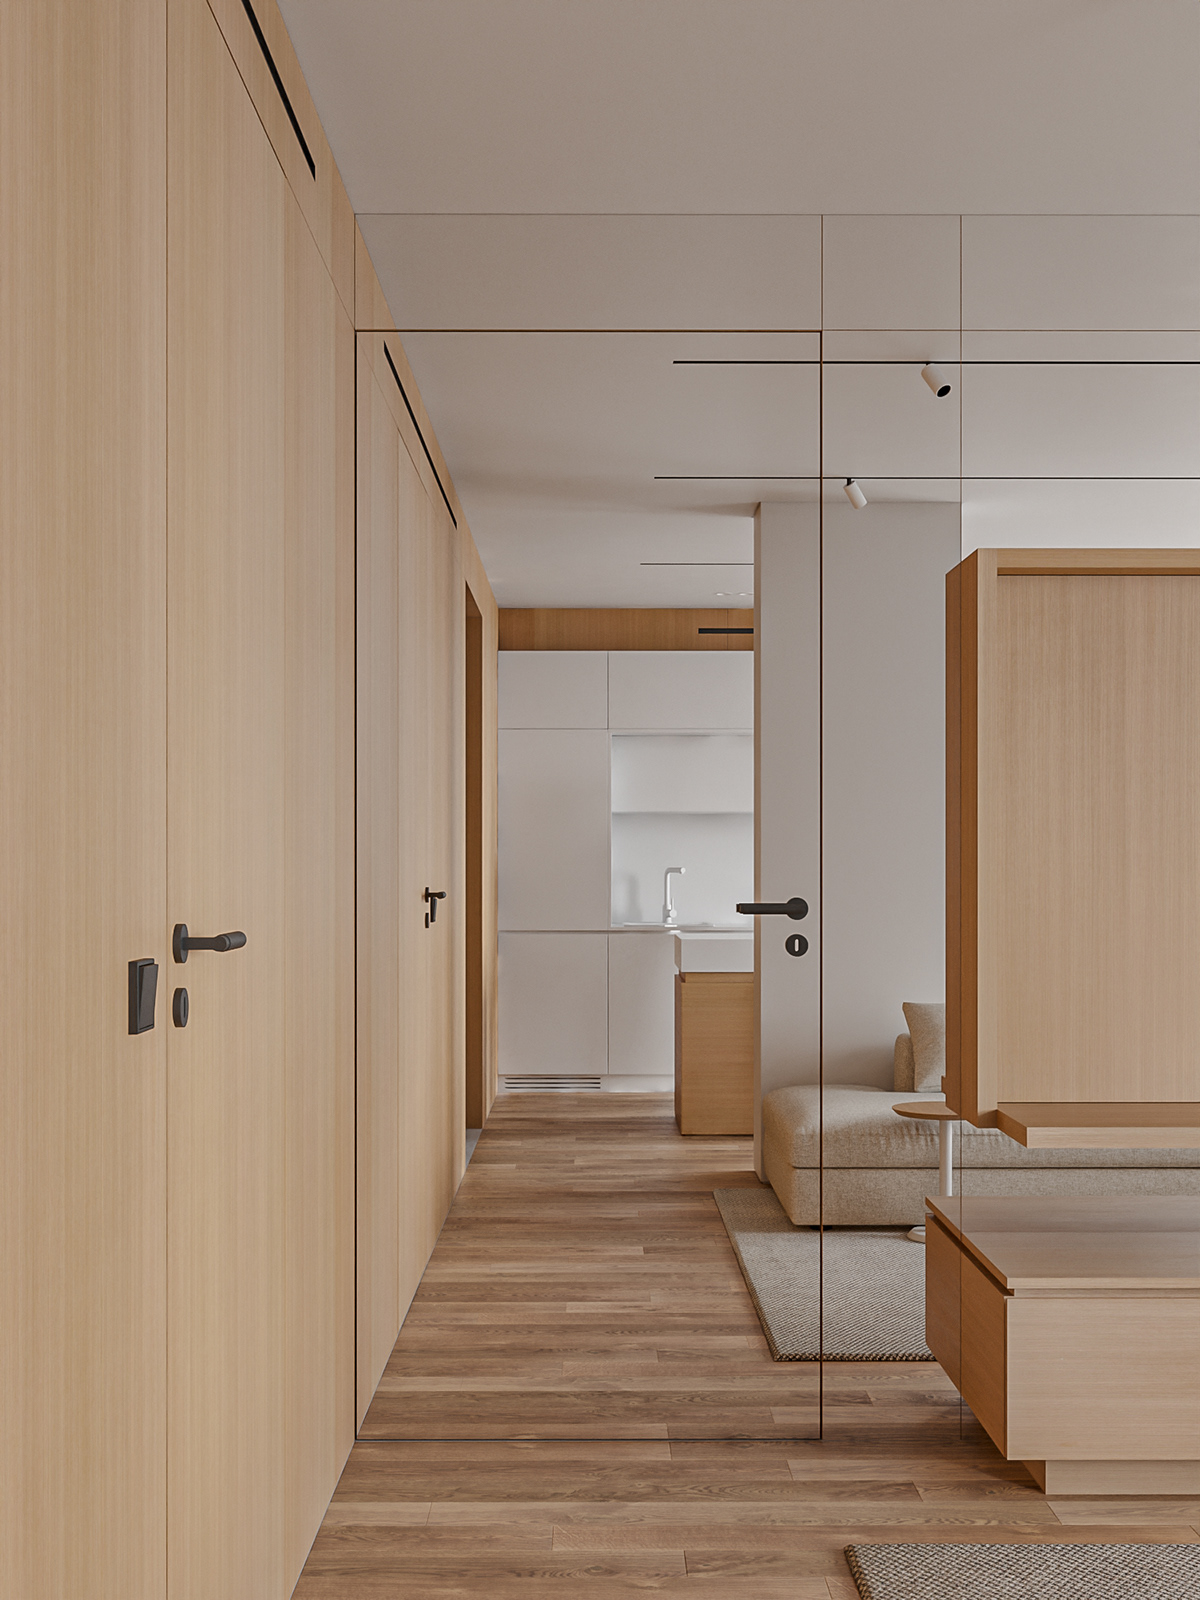 3ds max corona interior design  modern visualization